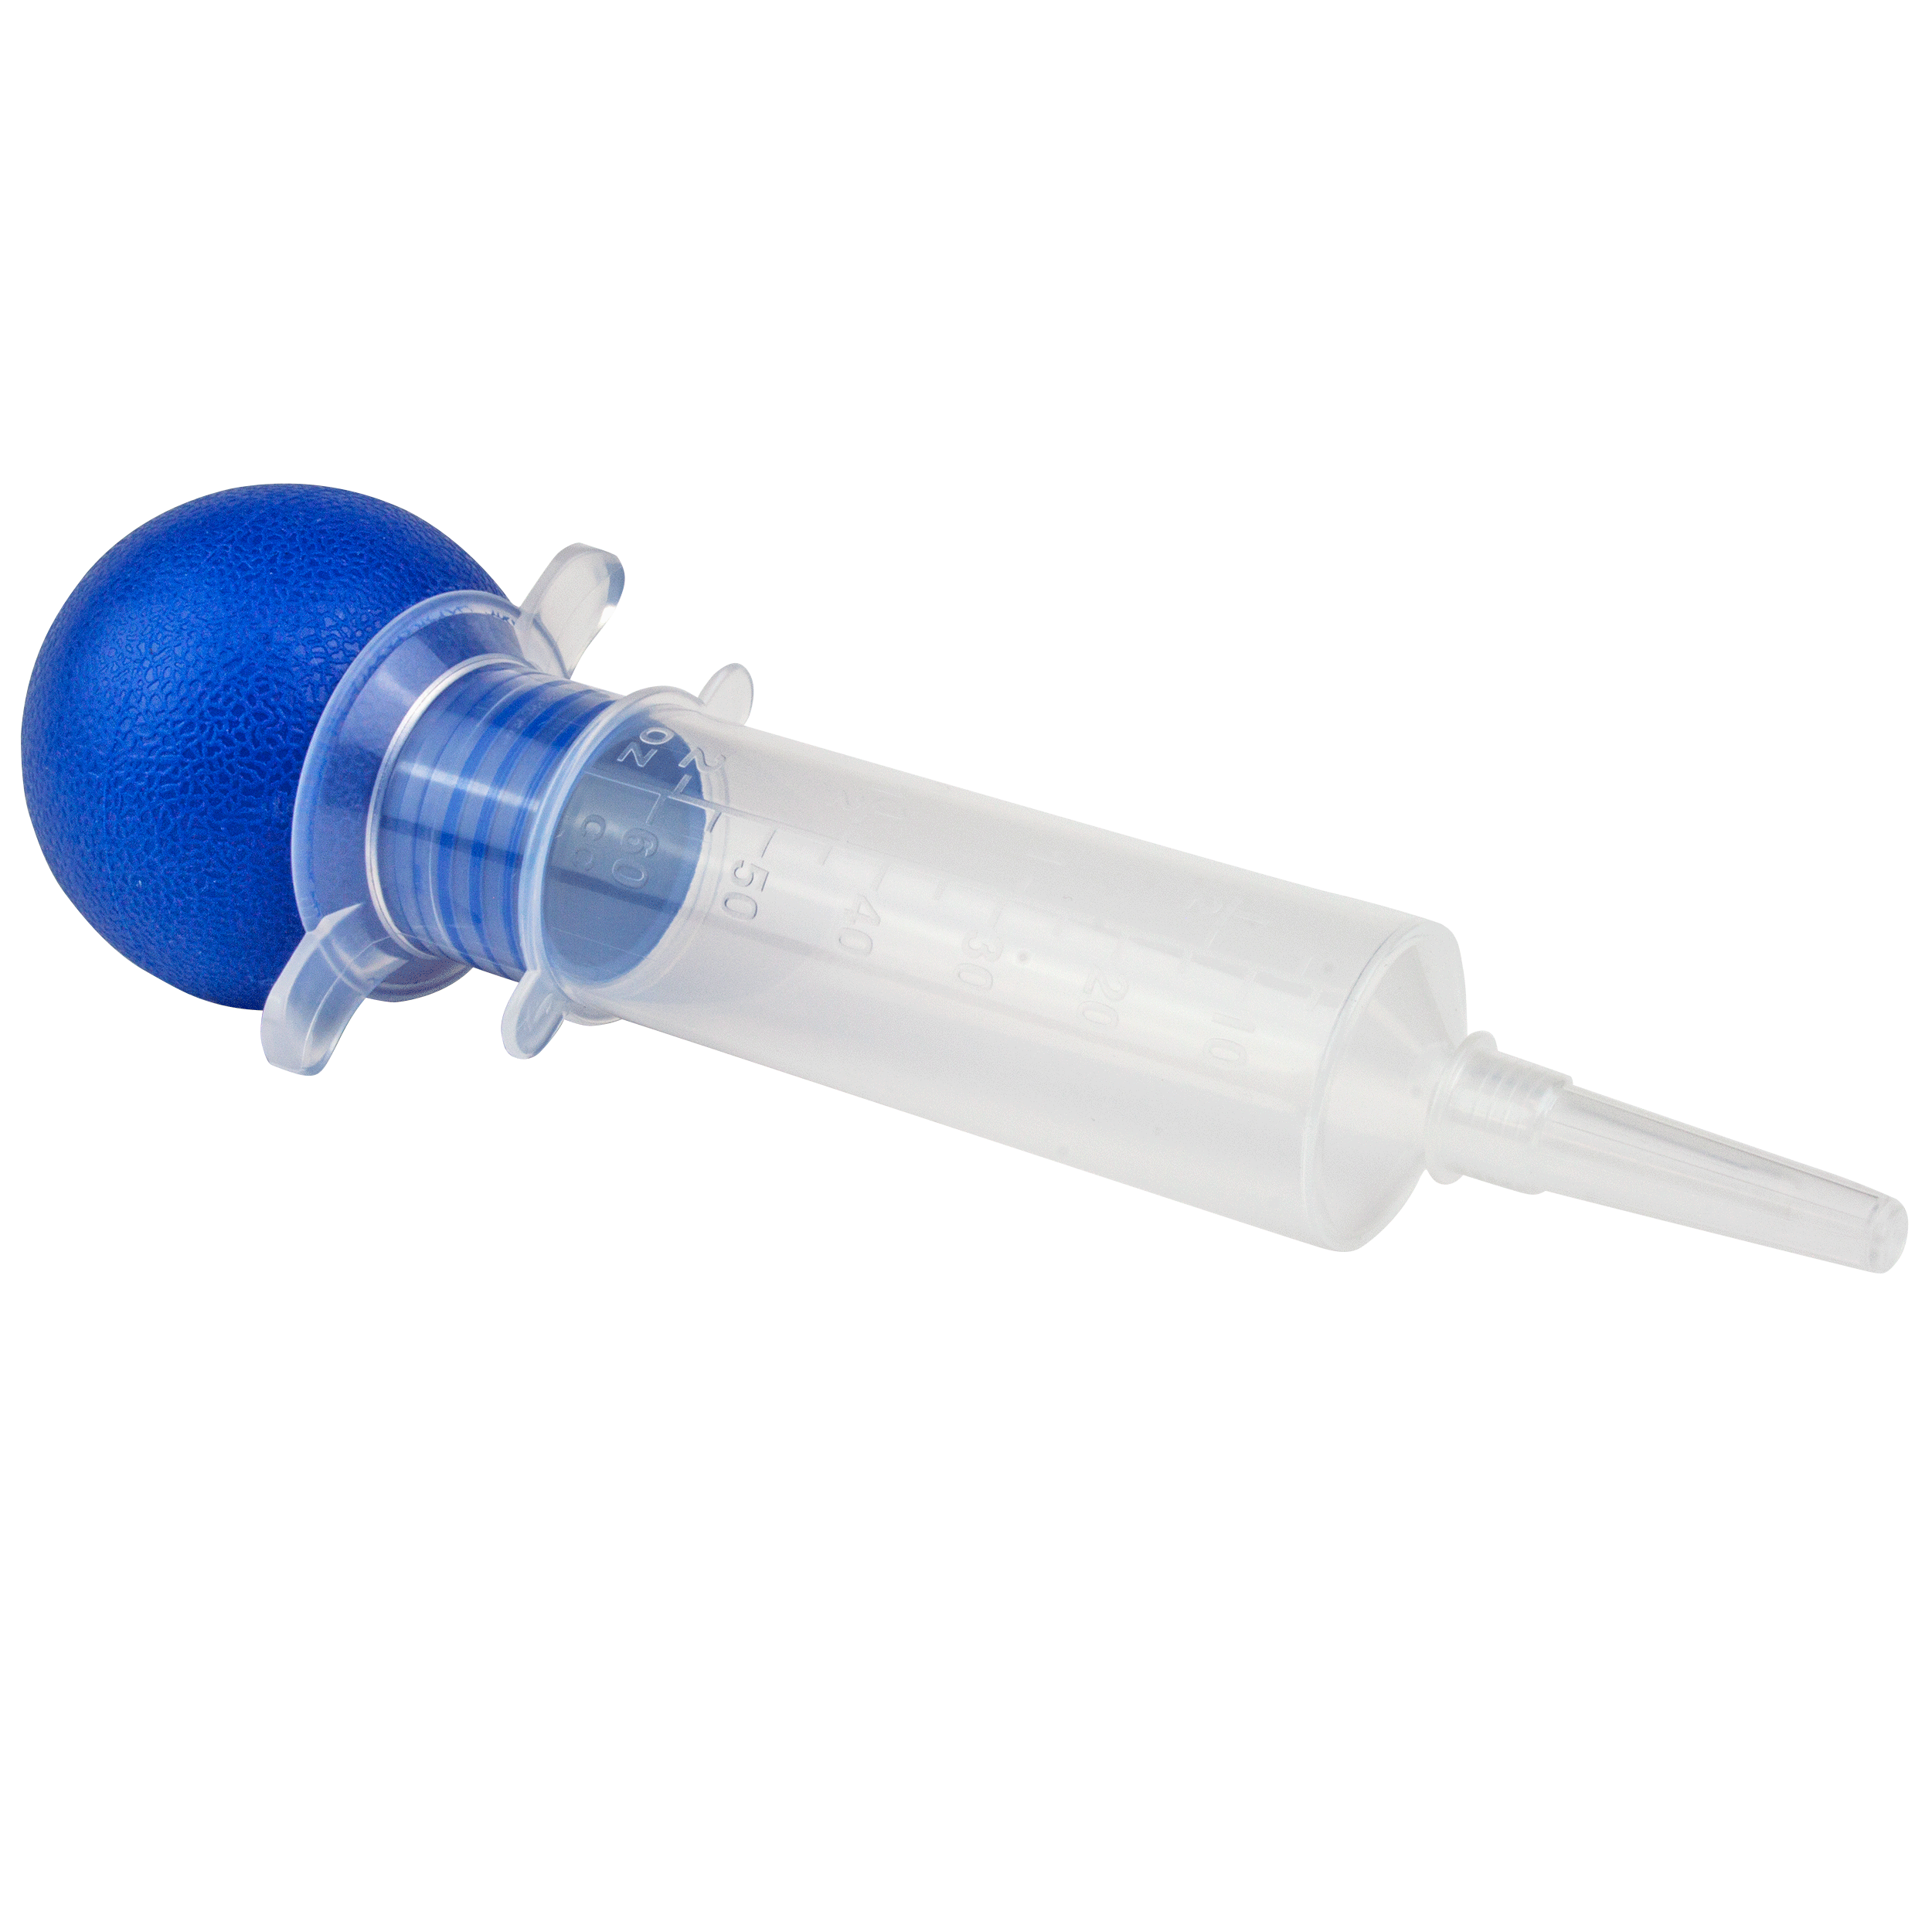 Bulb Irrigation Syringe 60cc